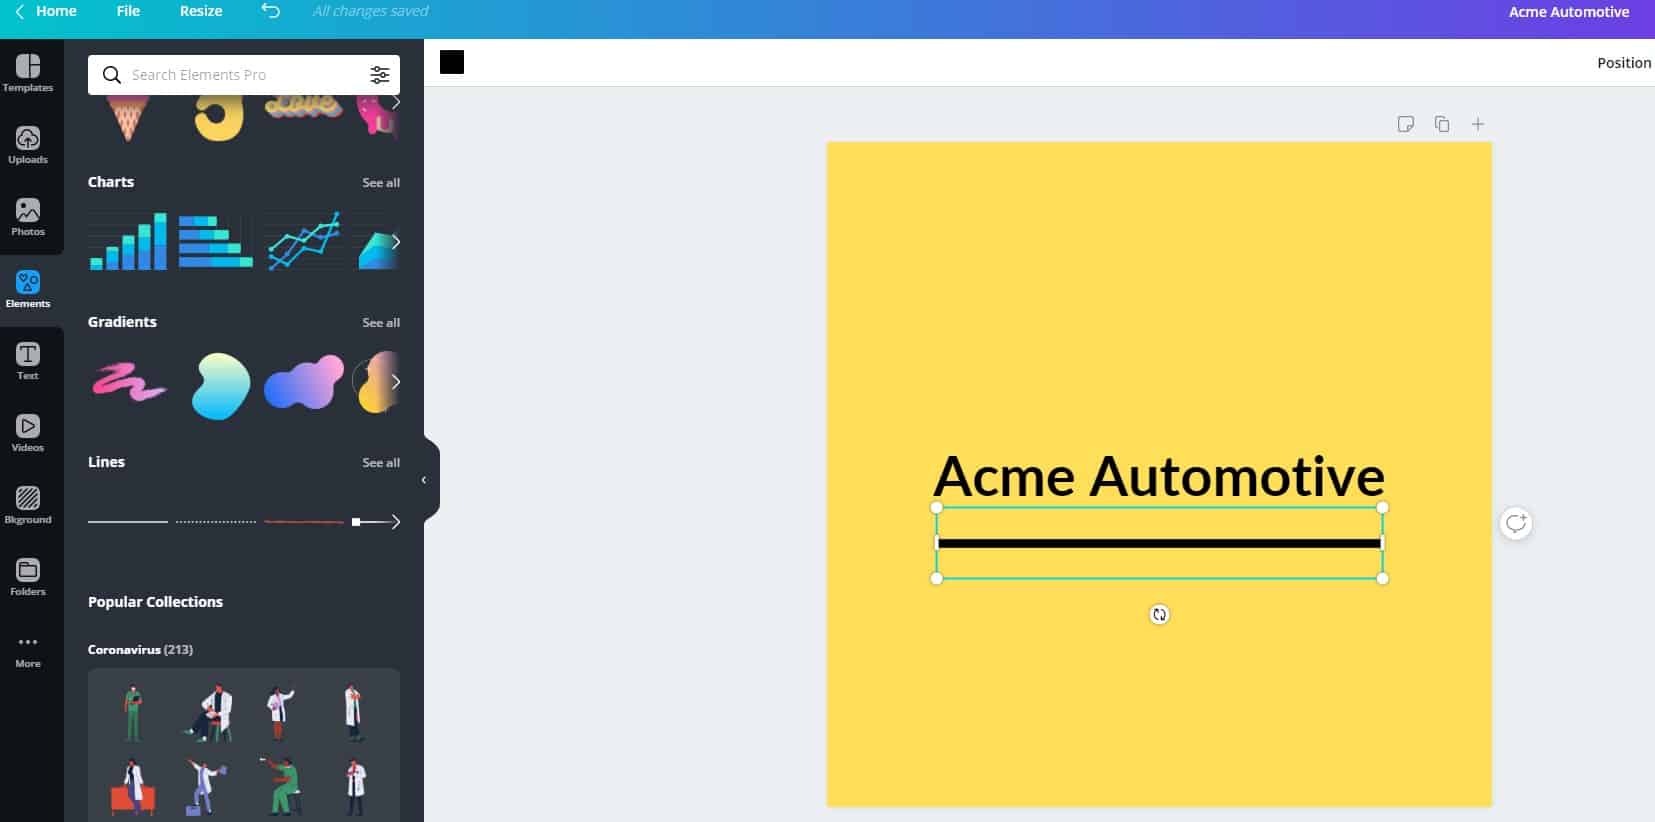 Additional Style Elements - Acme Automotive Image